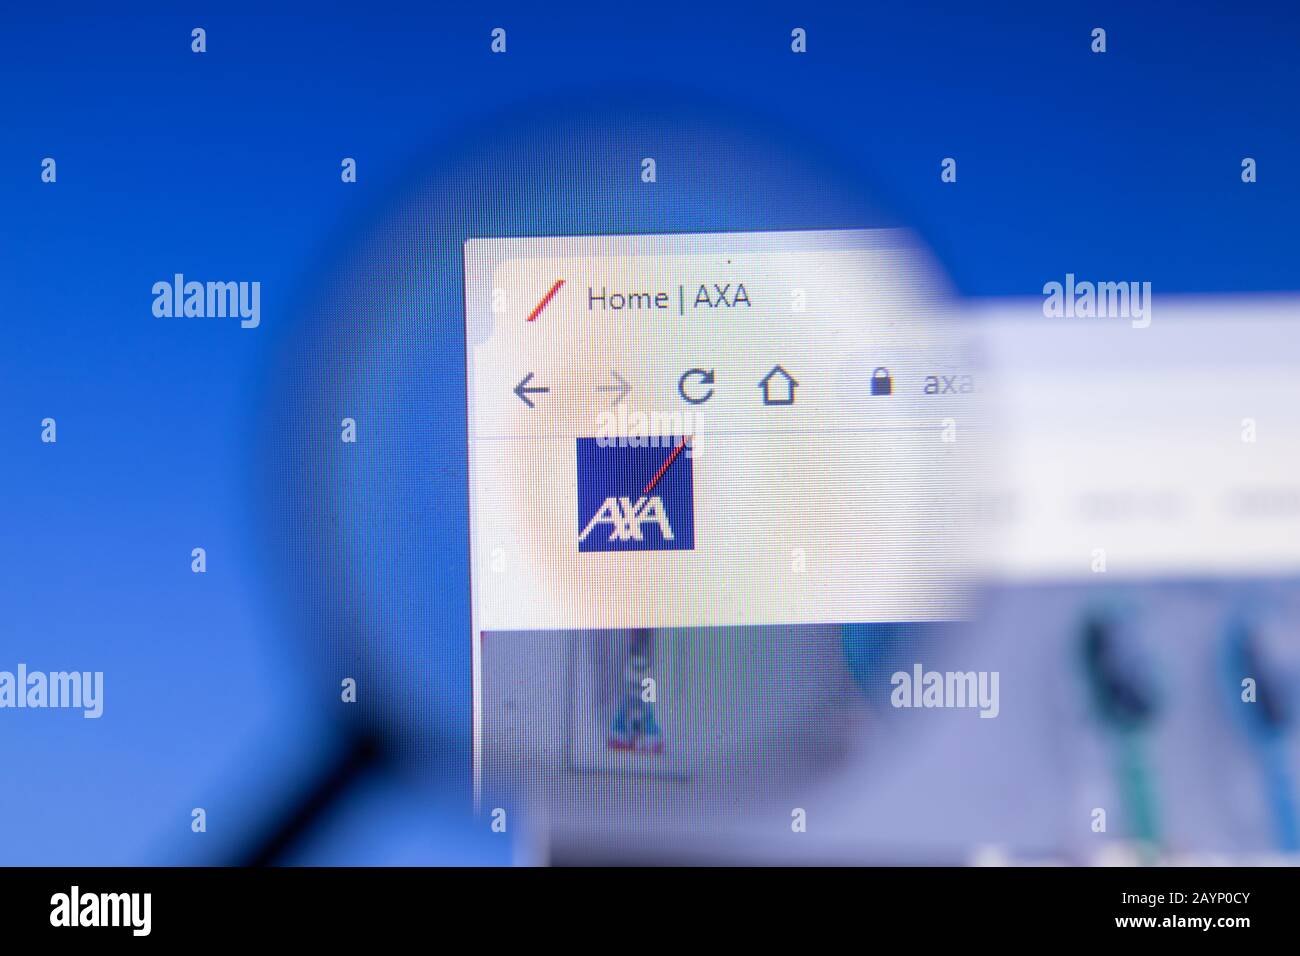 San Pietroburgo, Russia - 18 febbraio 2020: Logo della pagina del sito web della società AXA sul display del laptop. Schermata con icona, editoriale Illustrativo Foto Stock